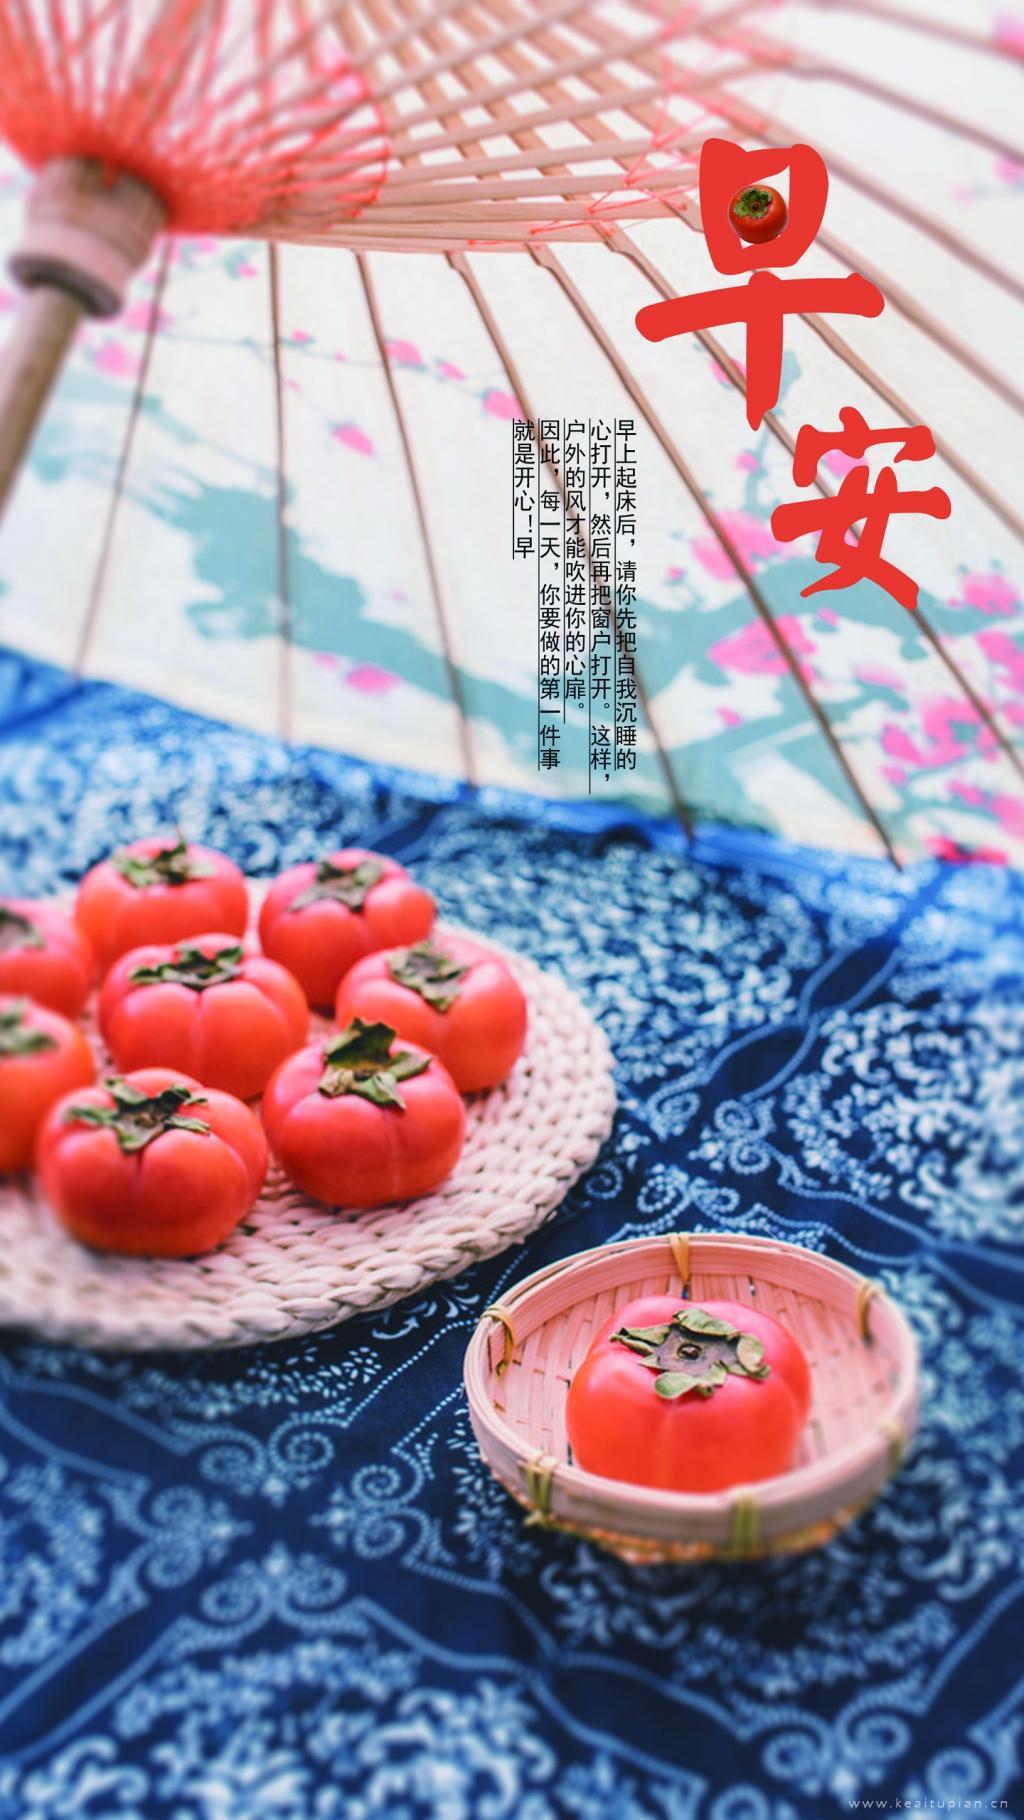 早安柿子唯美中国风纸伞蓝靛布文字图片